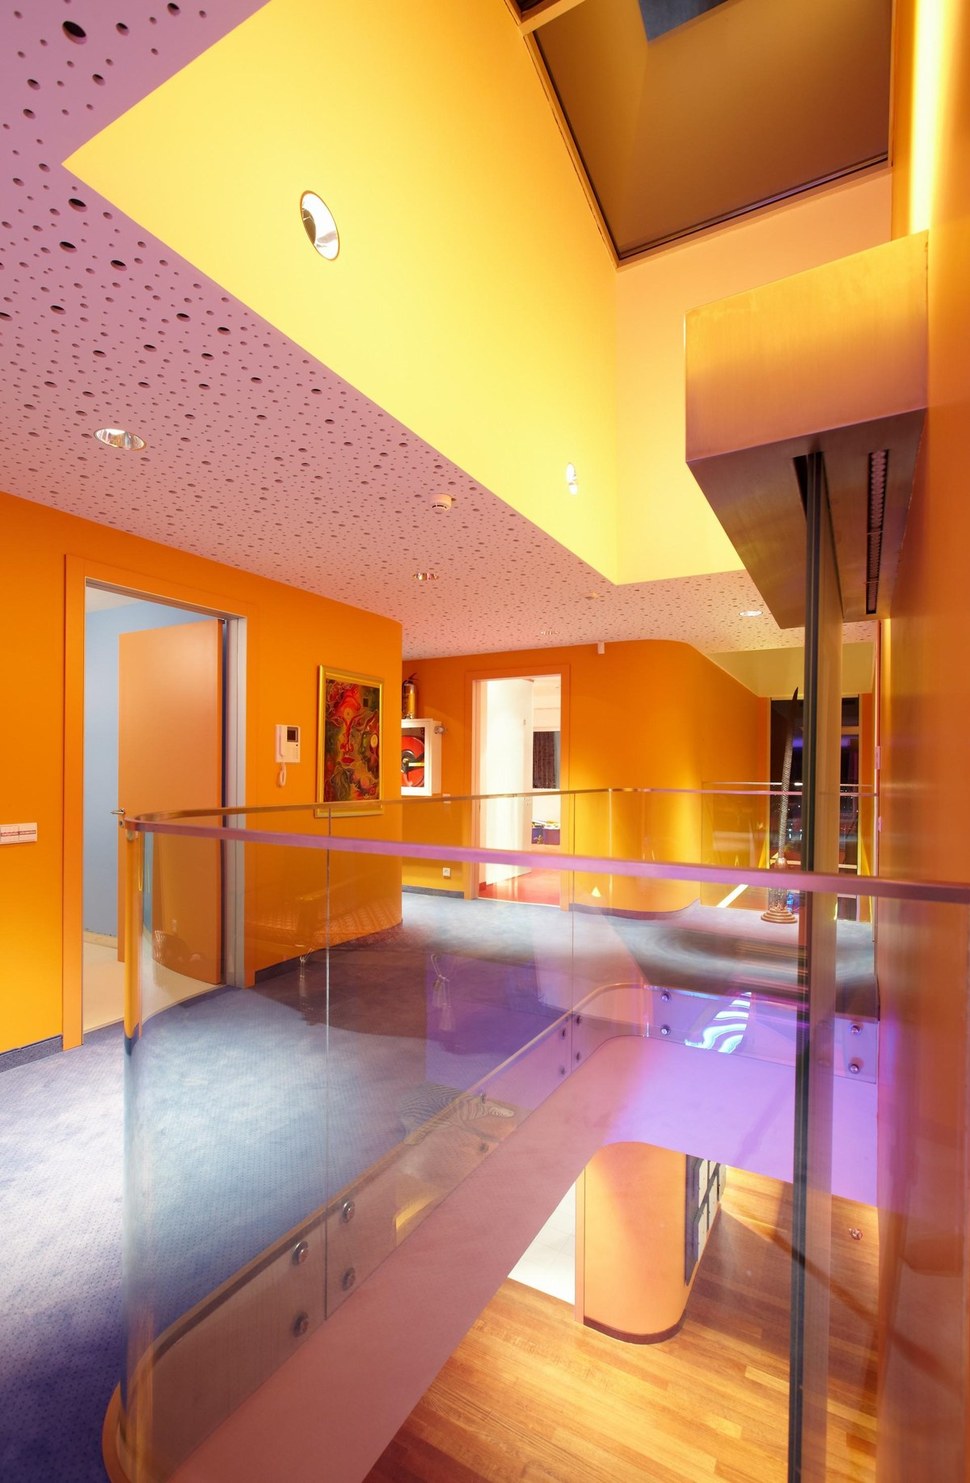 ultramodern-house-with-vibrant-lighting-design-focus-17-upper-floor.jpg